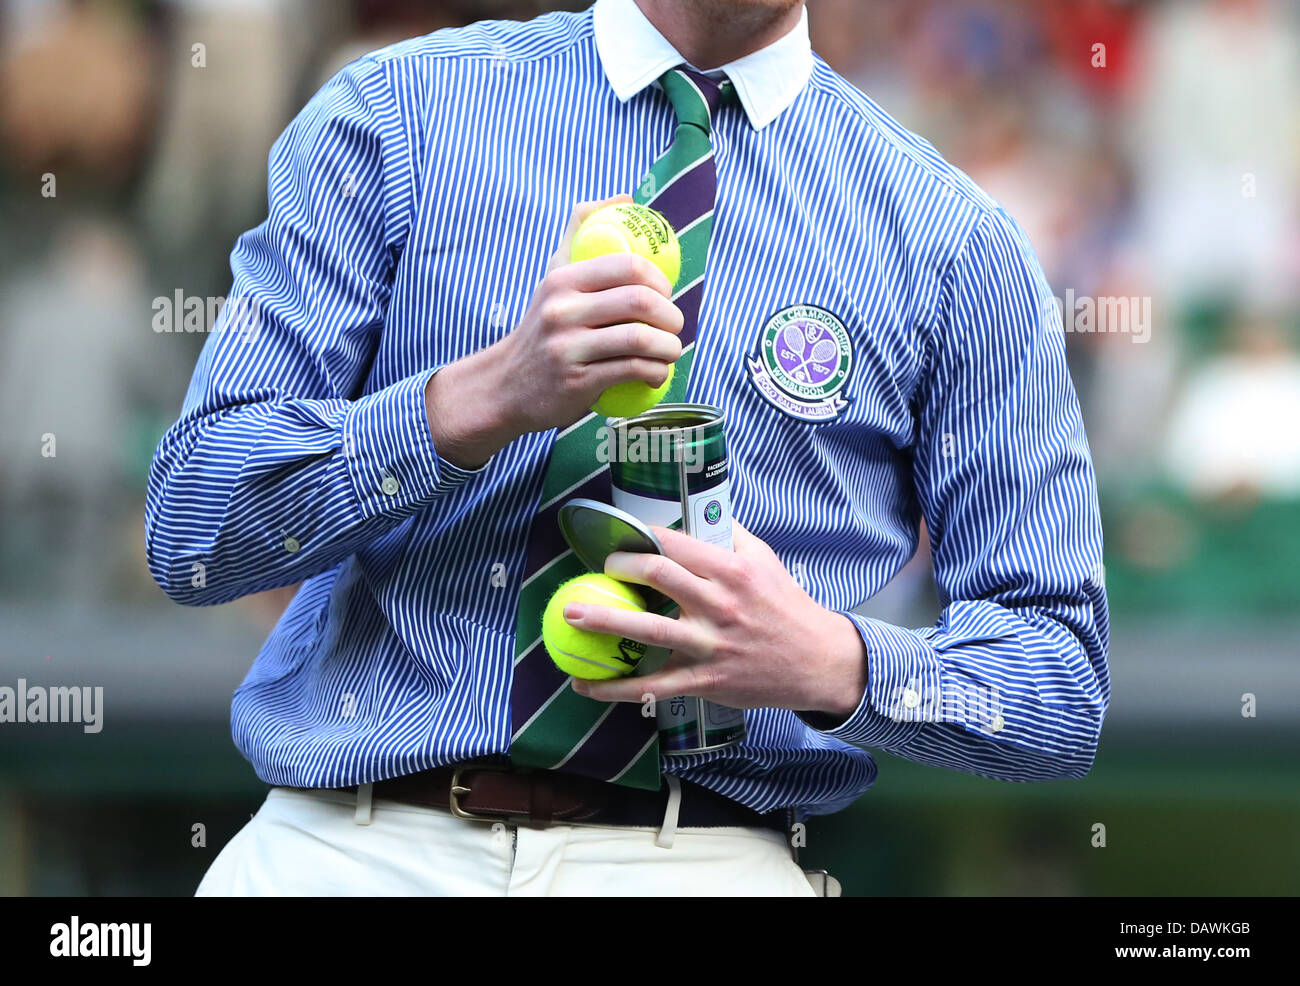 Campeonatos de Tenis de Wimbledon 2013 Foto de stock